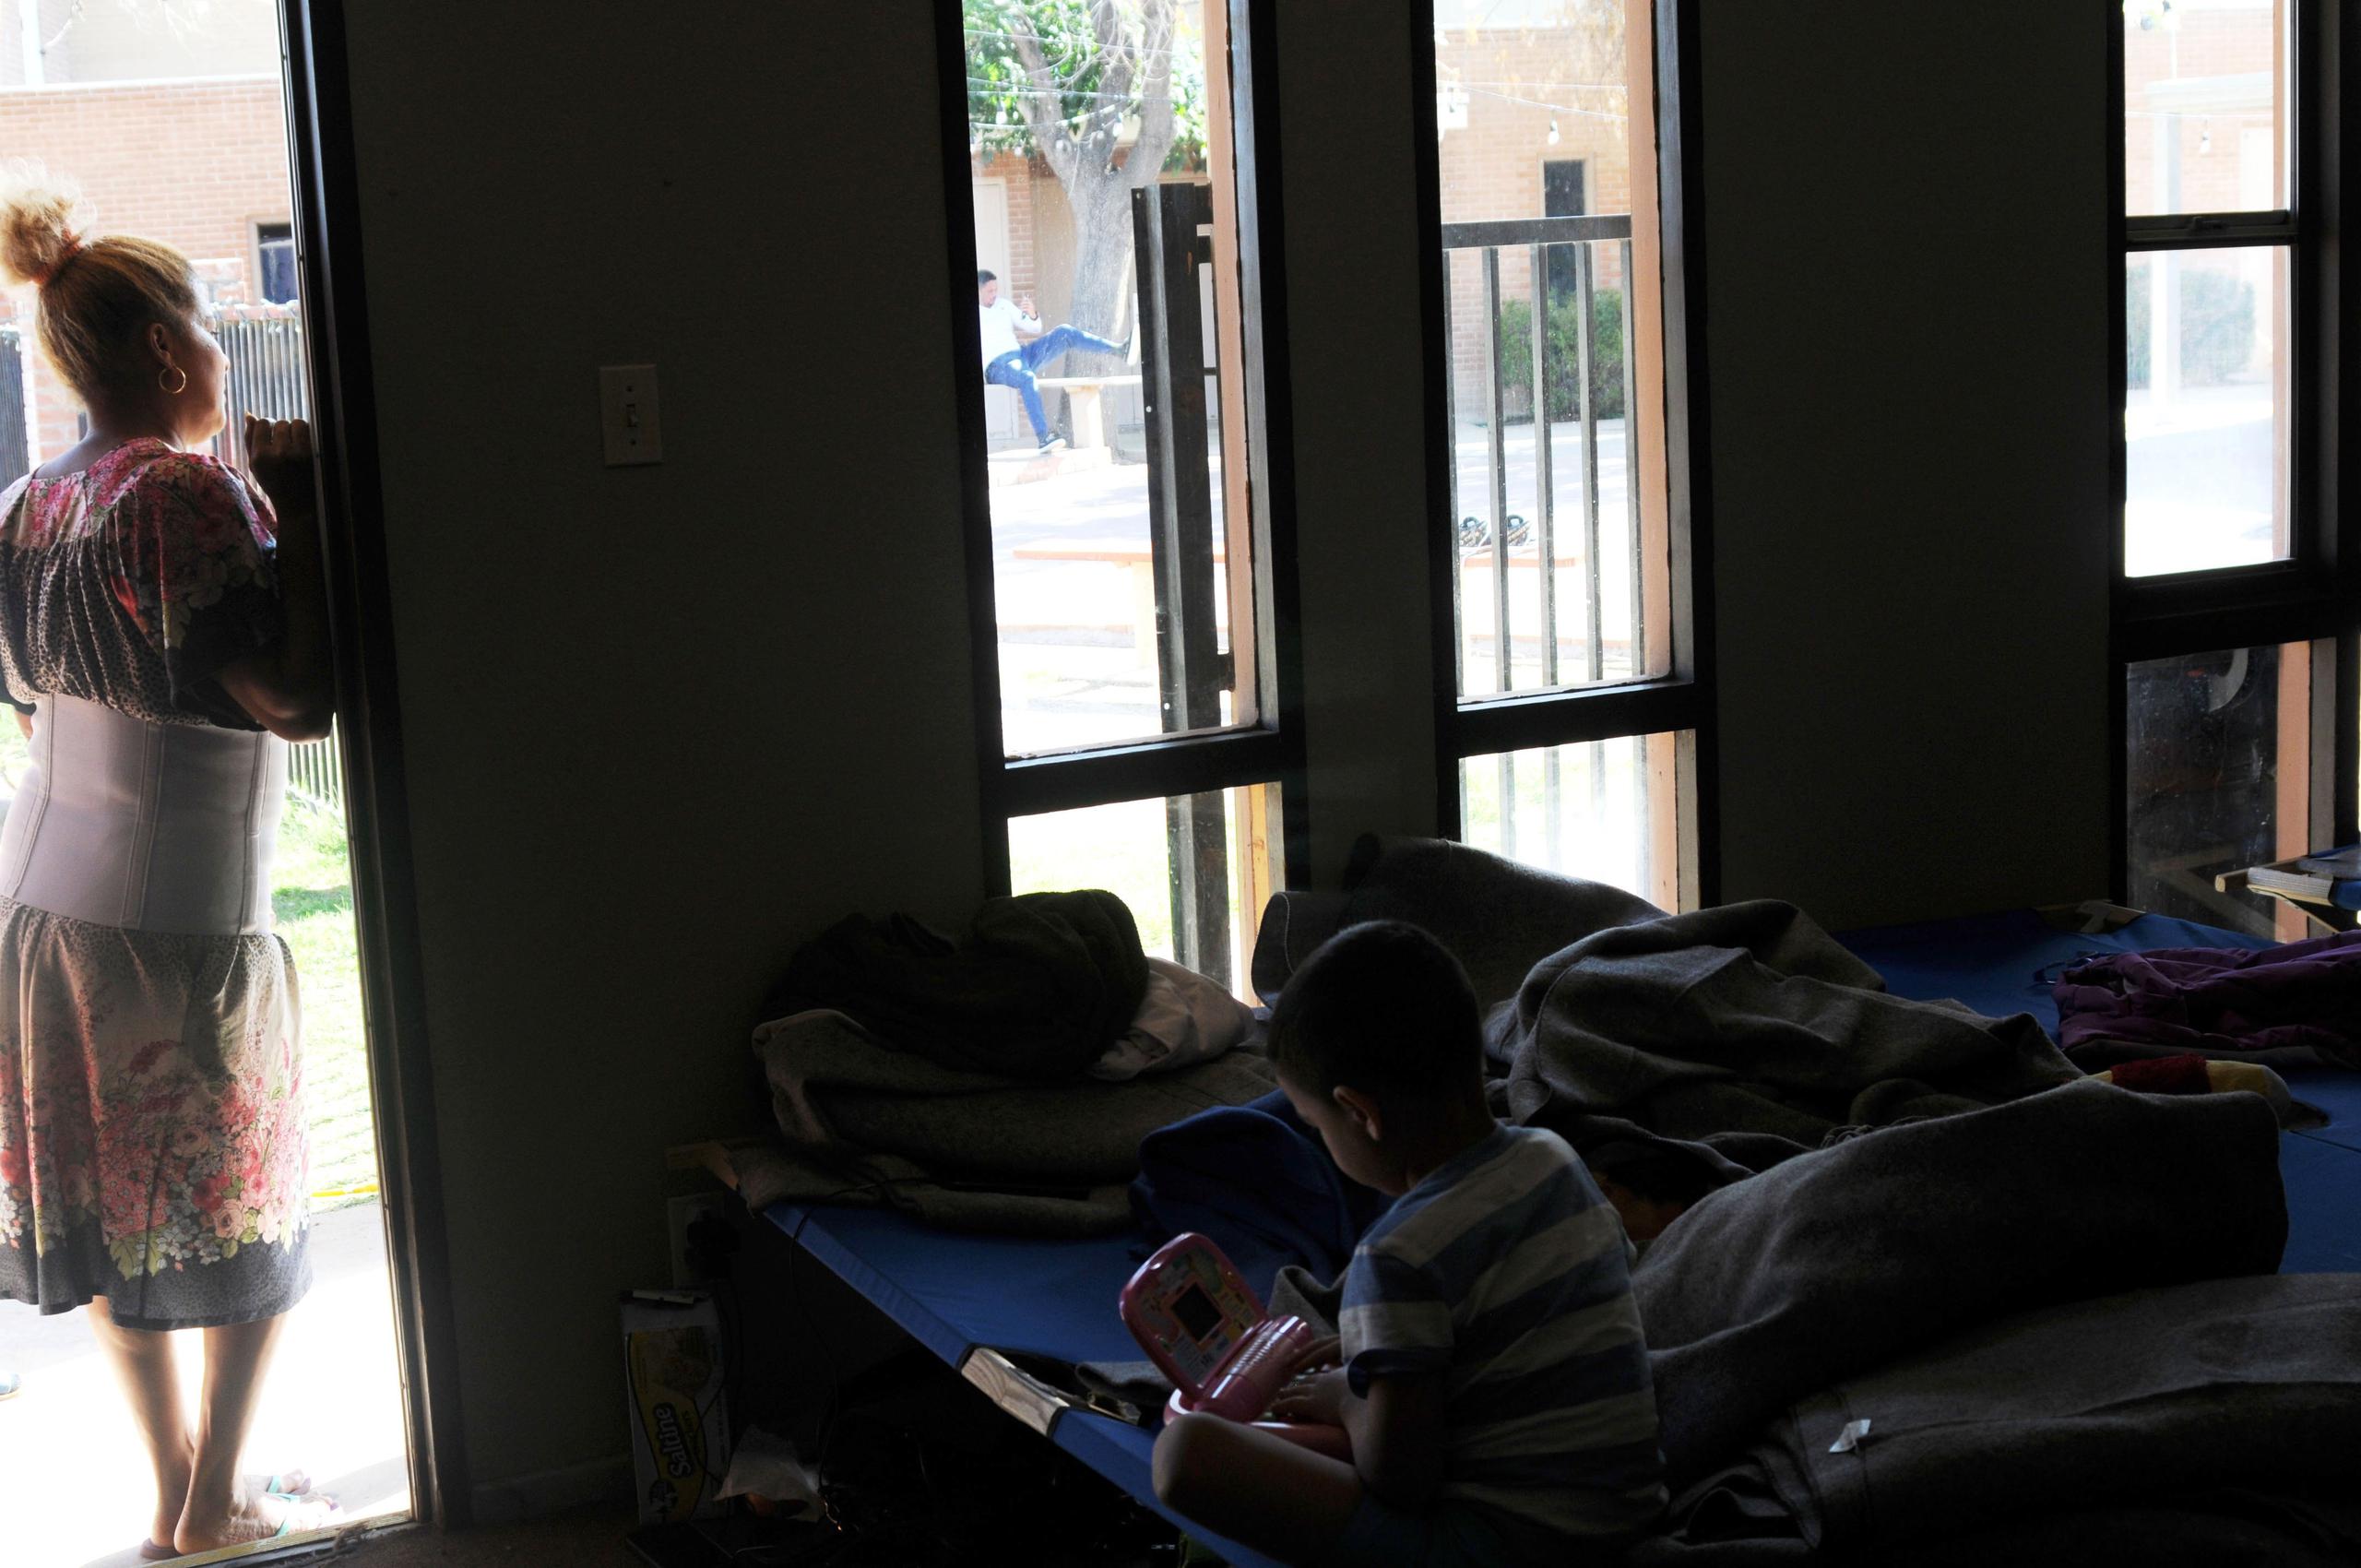 Vista de una mujer inmigrante y su hijo en un albergue. EFE/Beatriz Limón/Archivo
